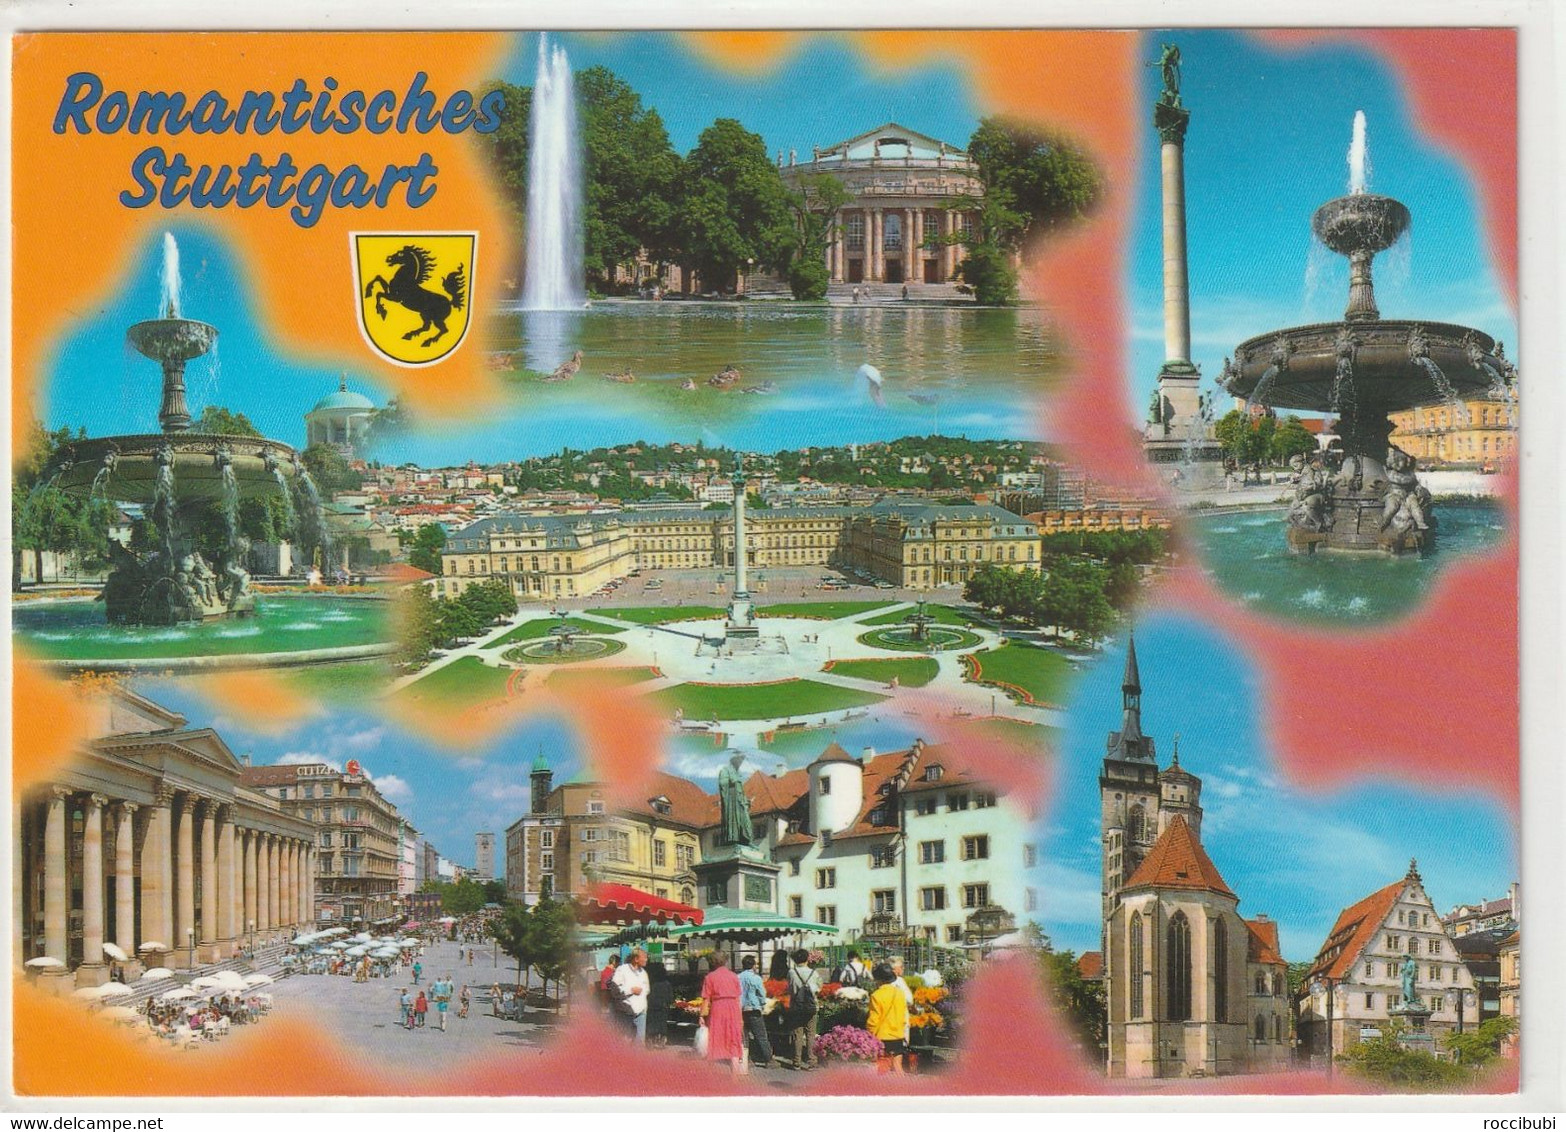 Stuttgart, Baden-Württemberg - Stuttgart